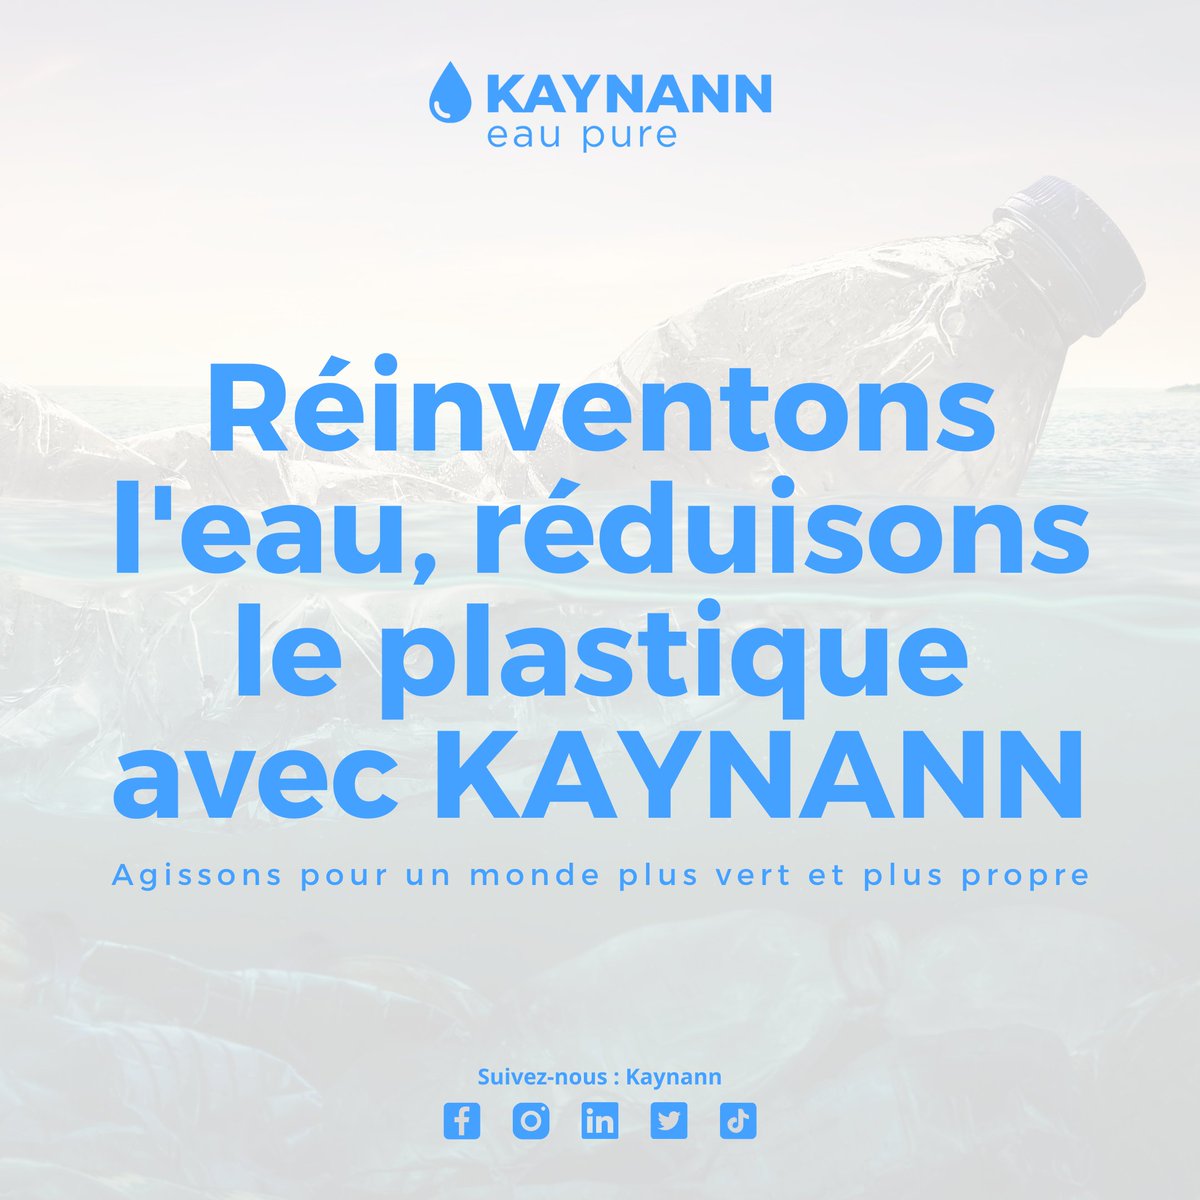 Réinventons l'eau, réduisons le plastique avec KAYNANN. 💧🔄

Chaque bouteille réutilisée avec KAYNANN est un pas de plus vers un monde sans plastique.

Rejoignez-nous dans notre mission de préservation de l'environnement !

#Environnement #PlastiqueZéro #KAYNANN #Écologie